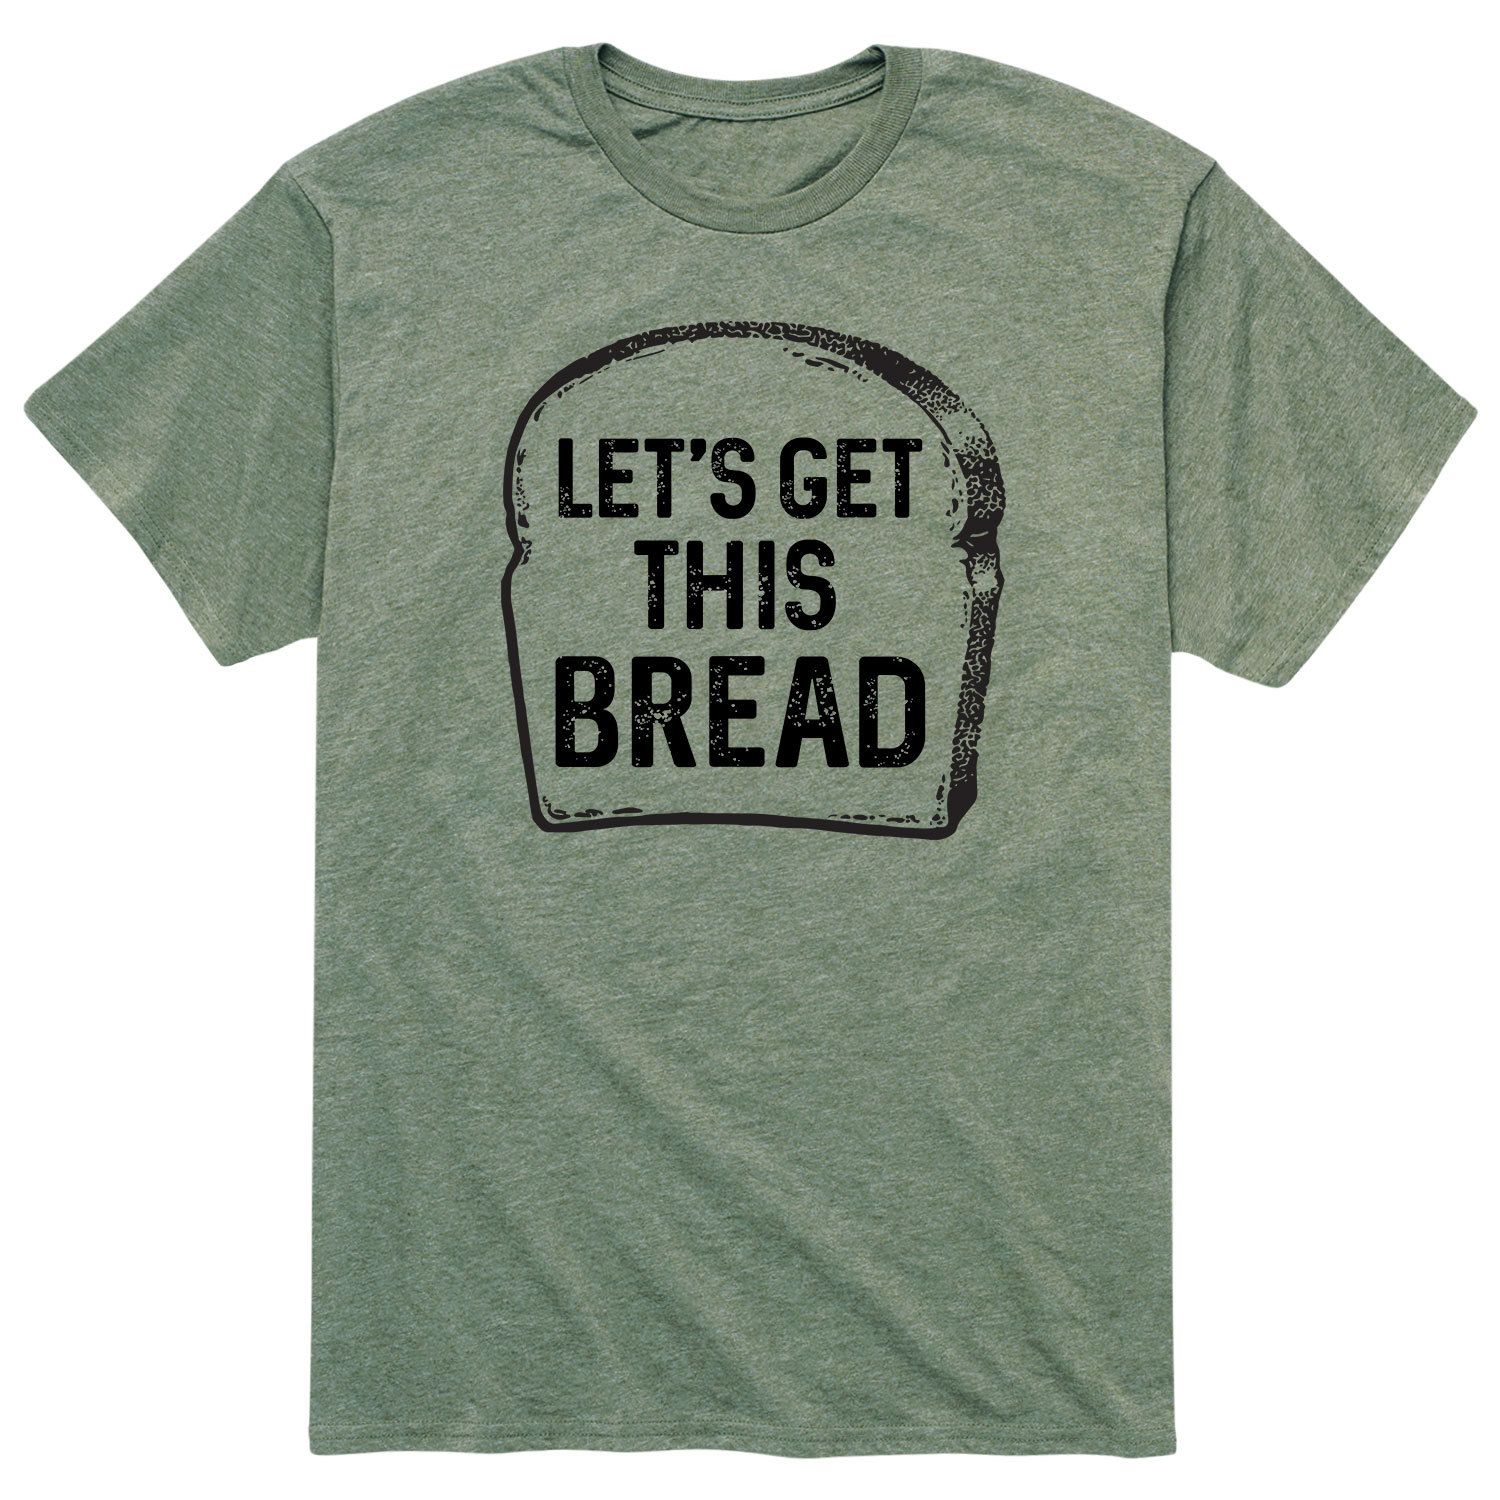 Мужская футболка Lets Get This Bread Licensed Character мужская футболка ripndip lets get this bread pocket чёрный размер m